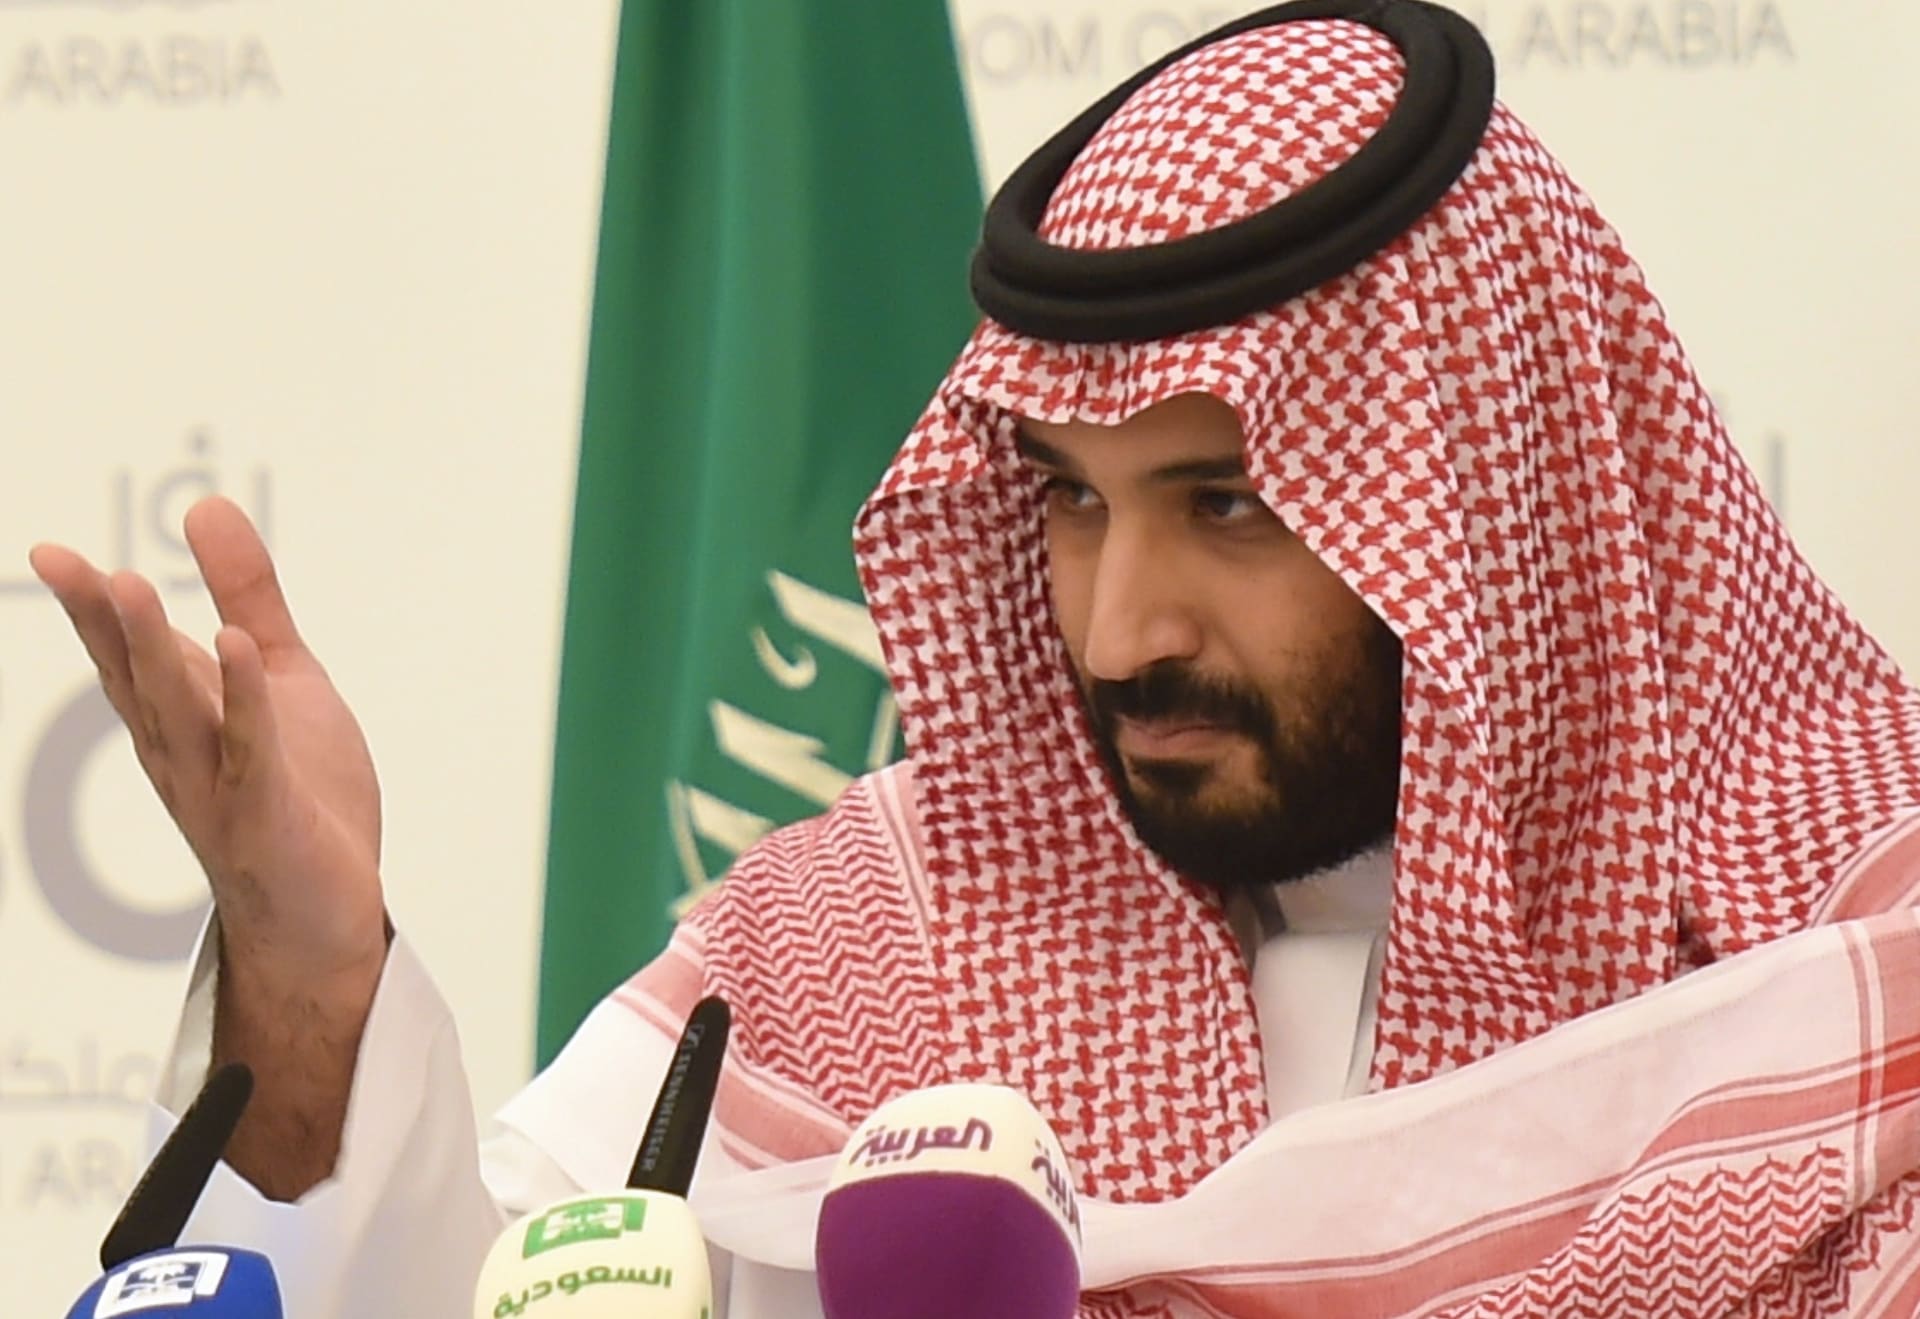 دينيس روس عن سياسات السعودية و"رؤية المملكة 2030": تحول محوري بظل الإصلاح الاقتصادي